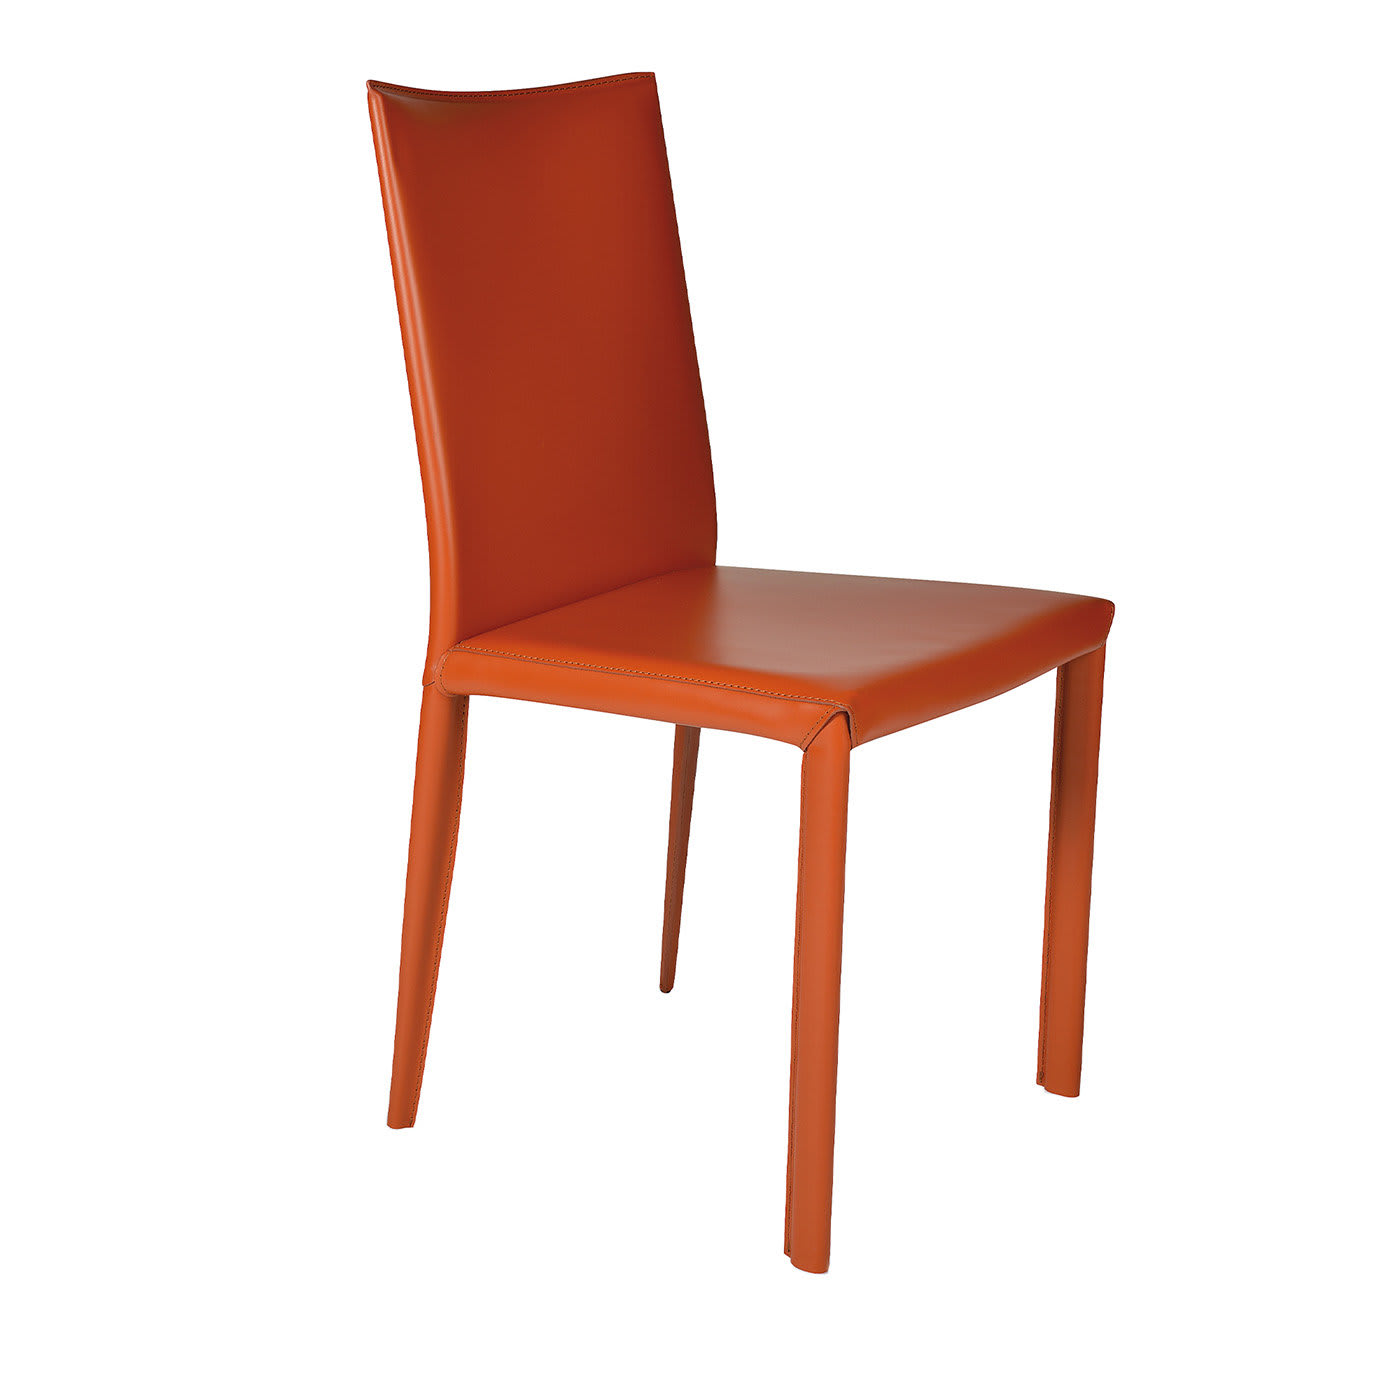 Arcade Orange Chair - Trevisan Asolo